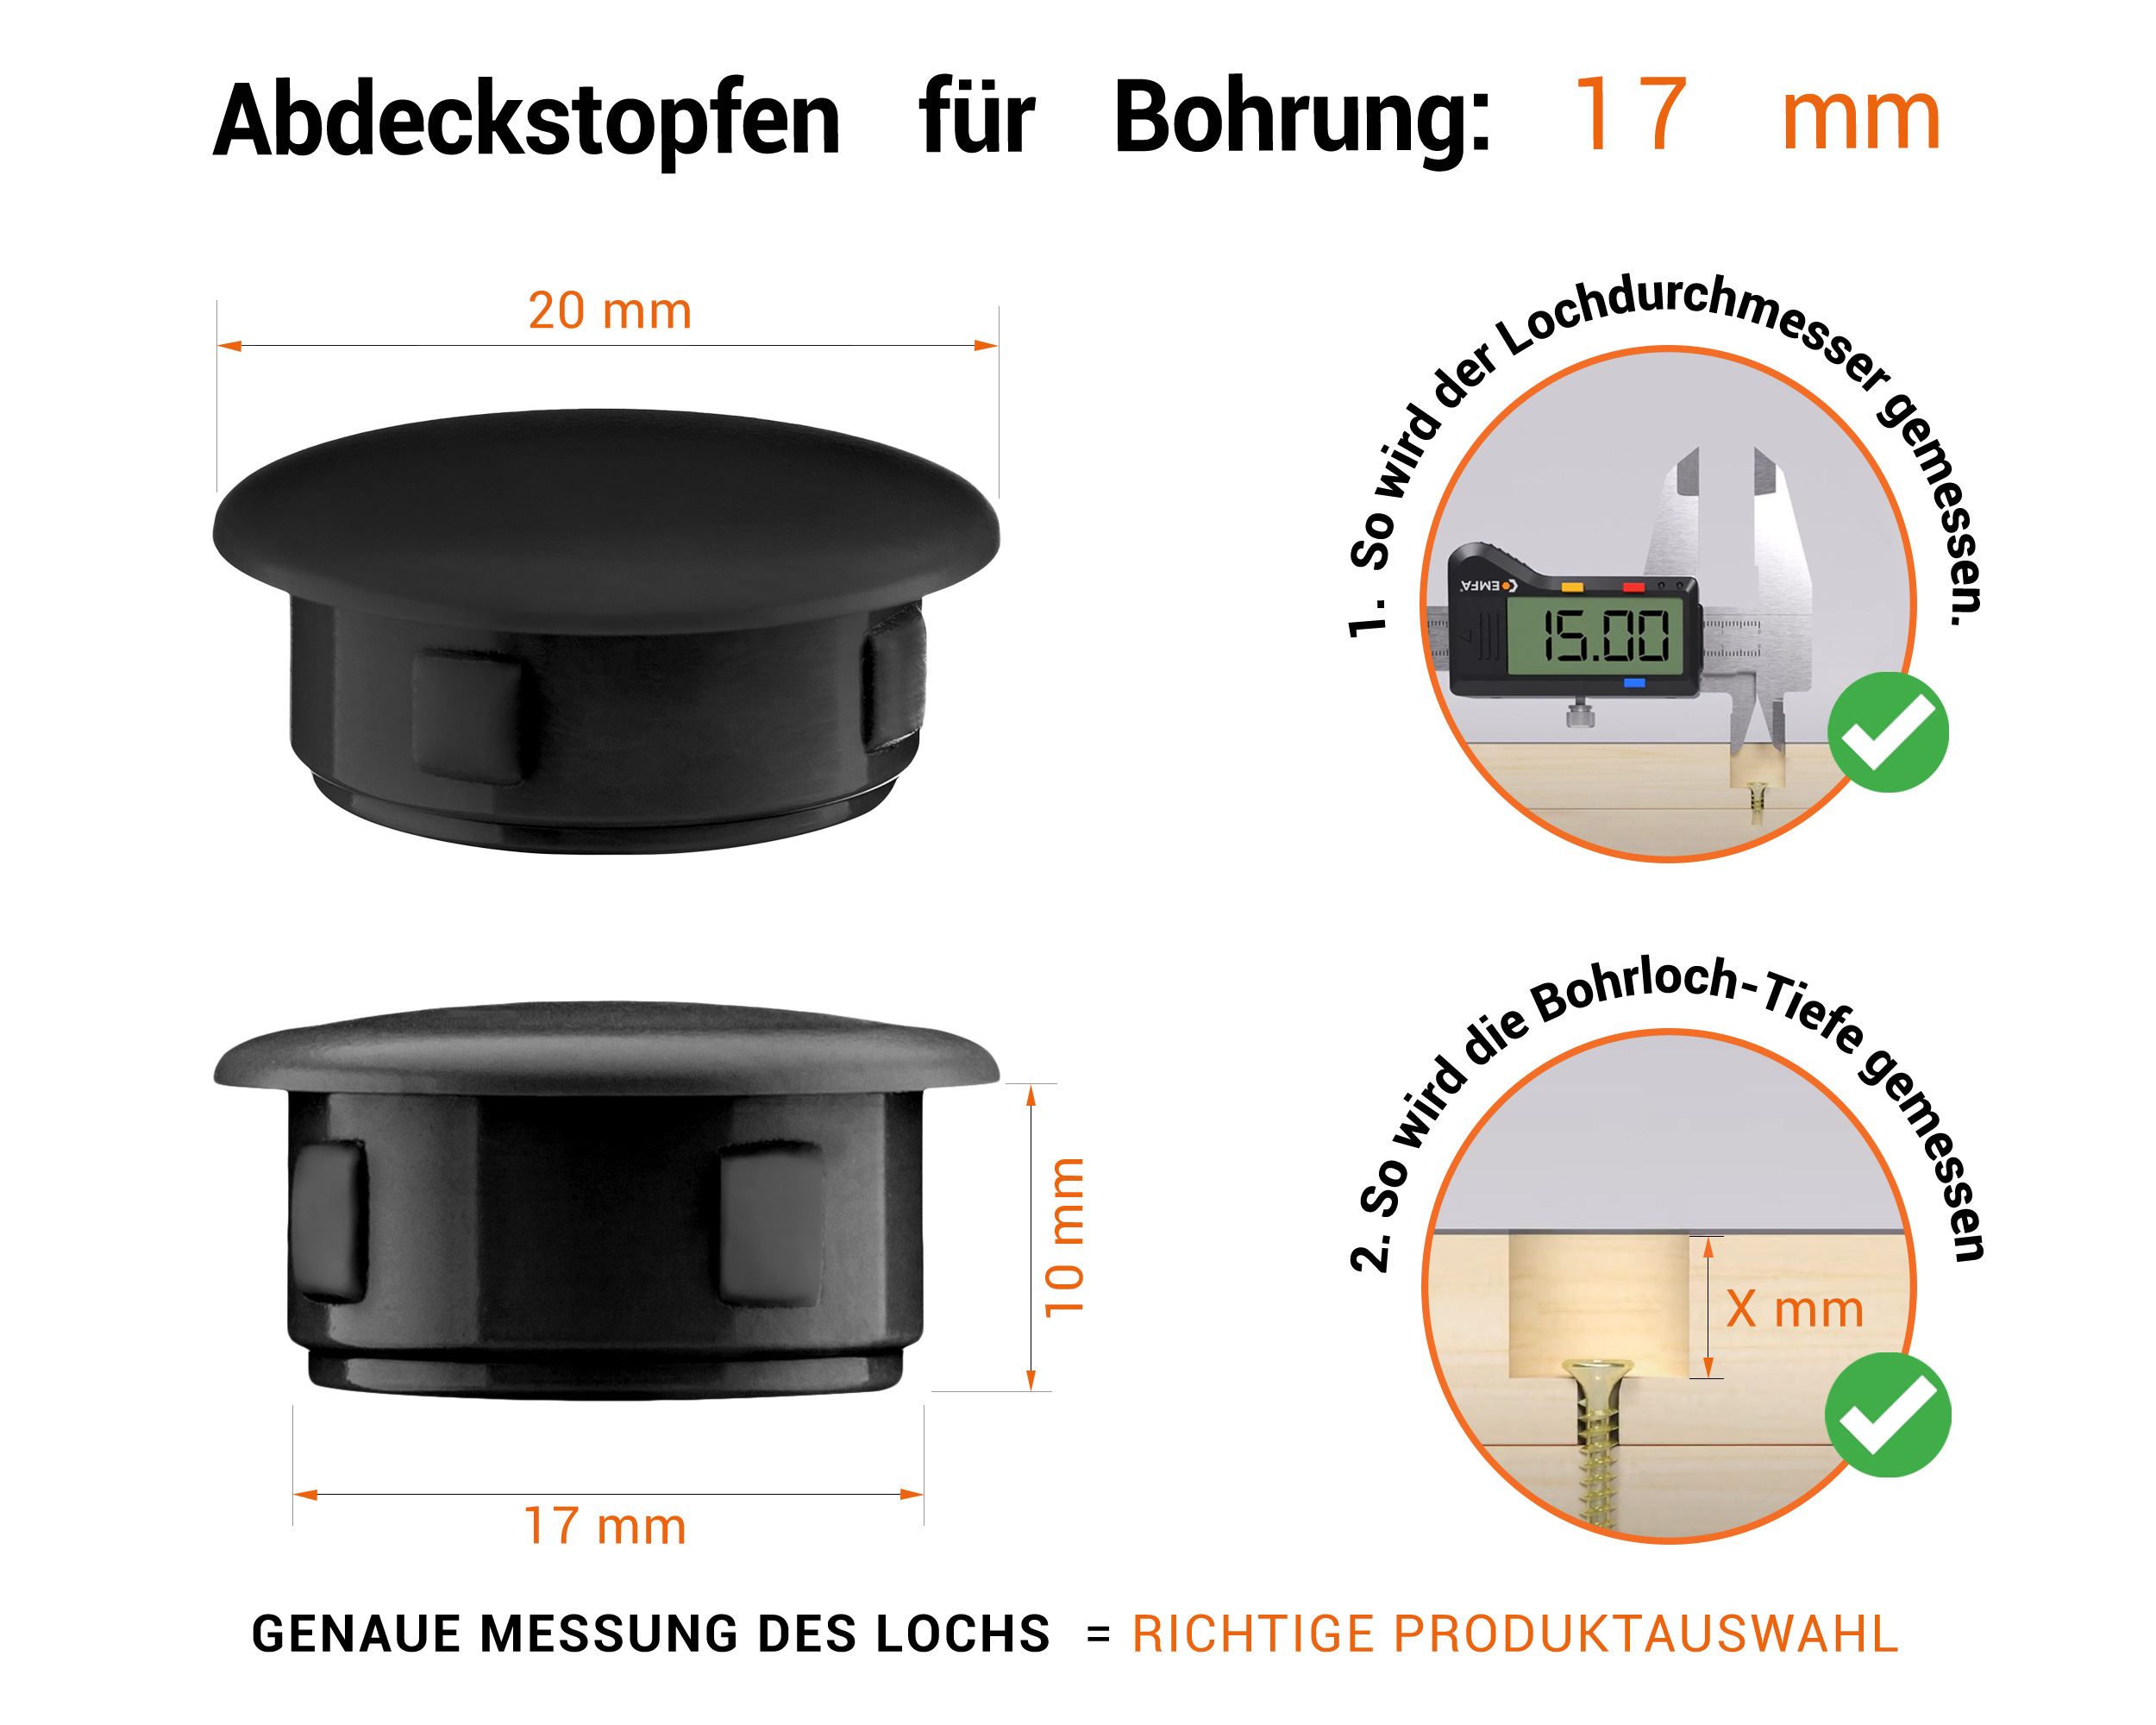 Schwarze Blindstopfen aus Kunststoff für Bohrung 17 mmmm mit technischen Abmessungen und Anleitung für korrekte Messung